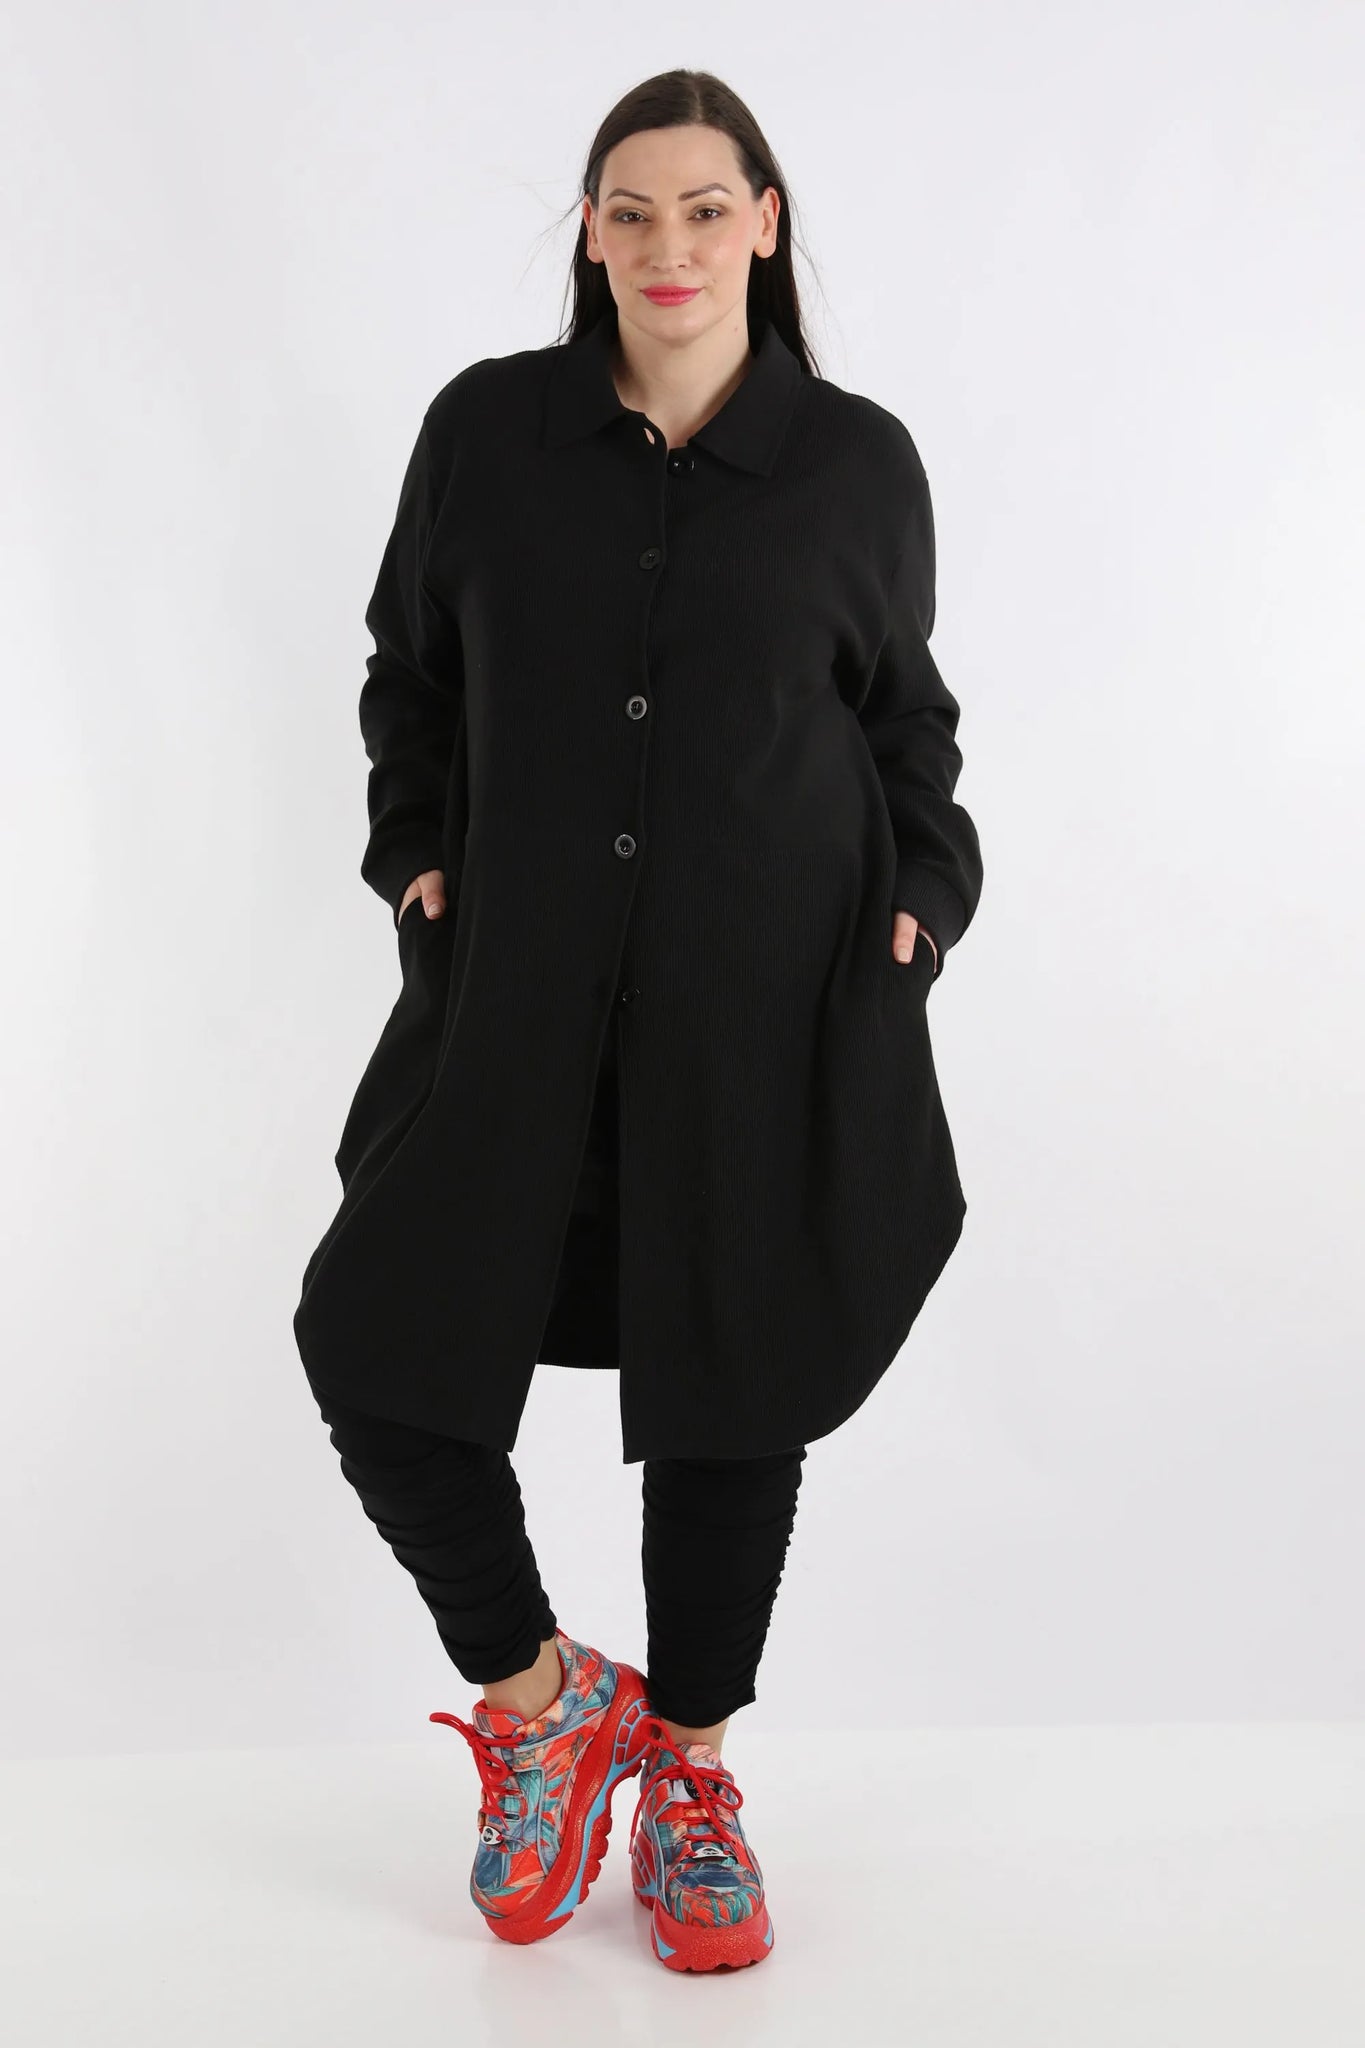 Bluse von AKH Fashion aus Baumwolle in gerundeter Form, 1252.06881, Schwarz, Ausgefallen